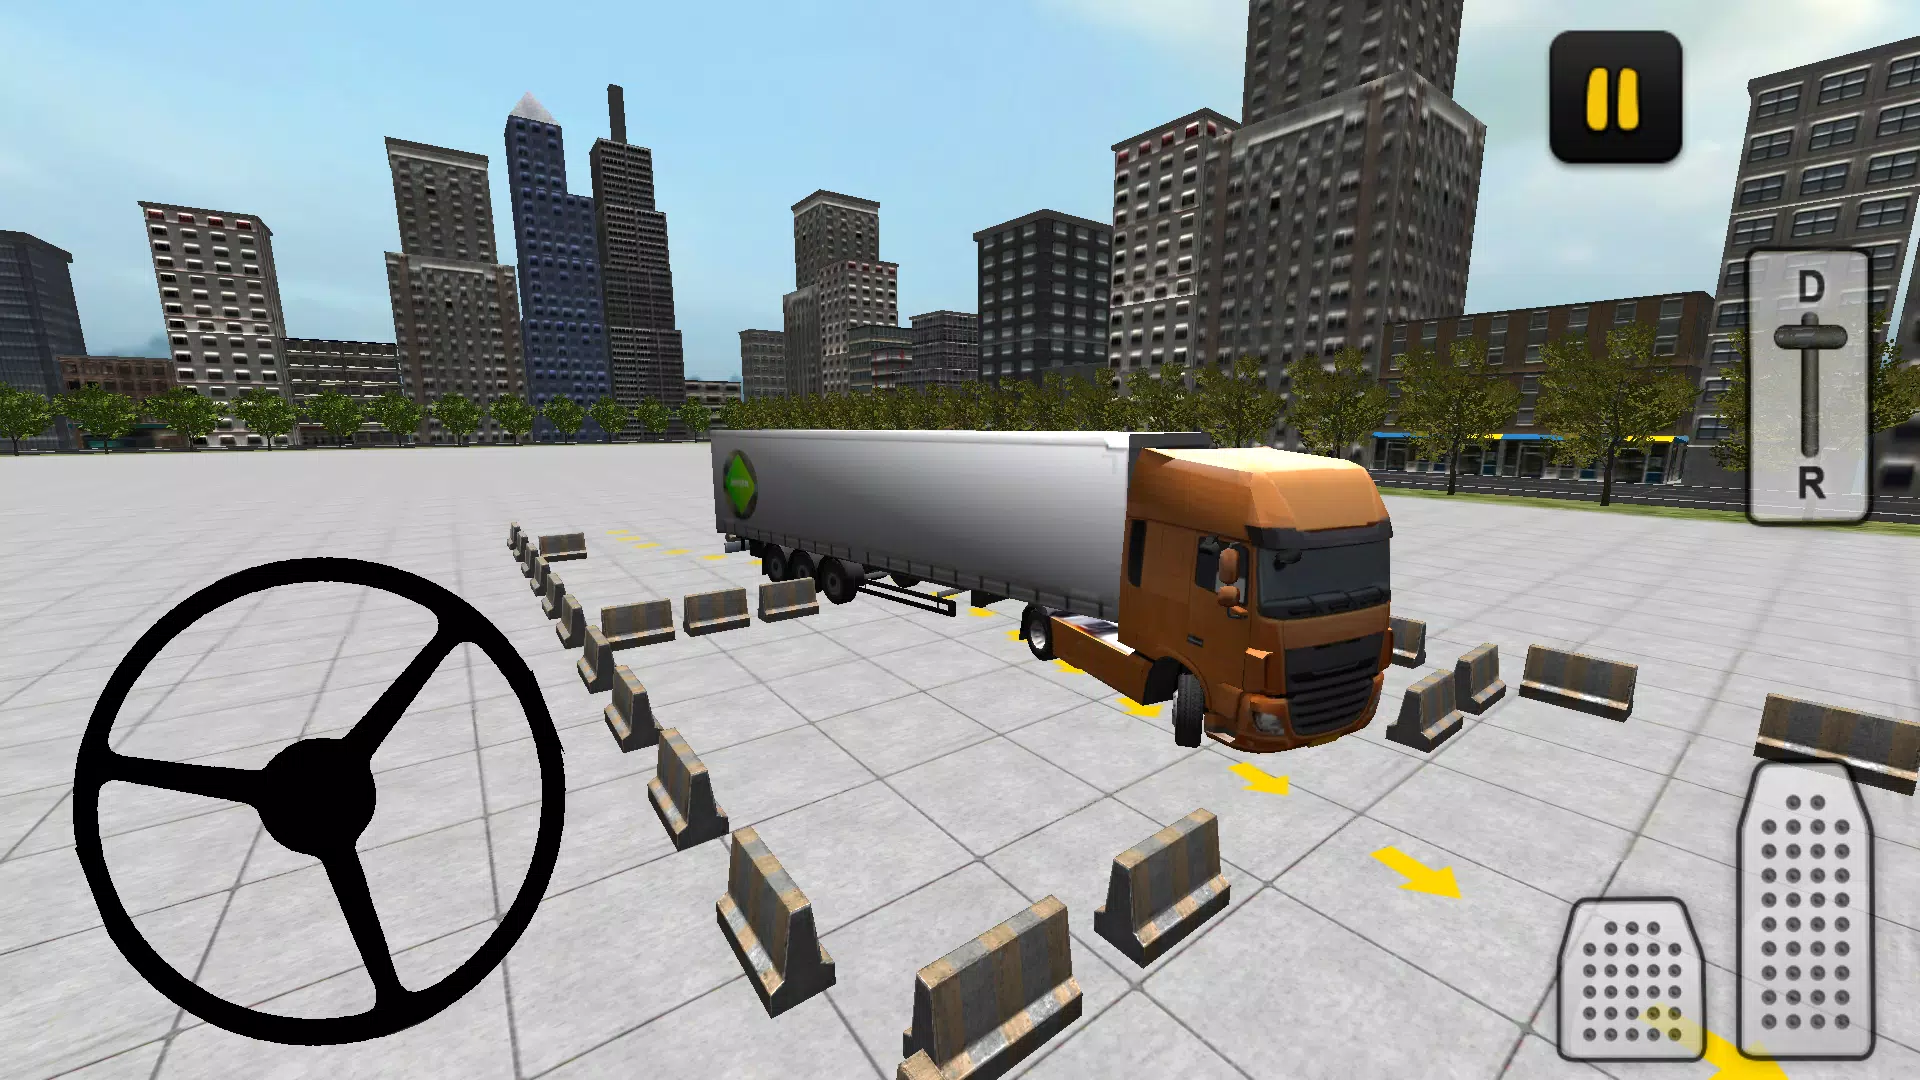 Simulador 3D de estacionamento de caminhões Pro versão móvel